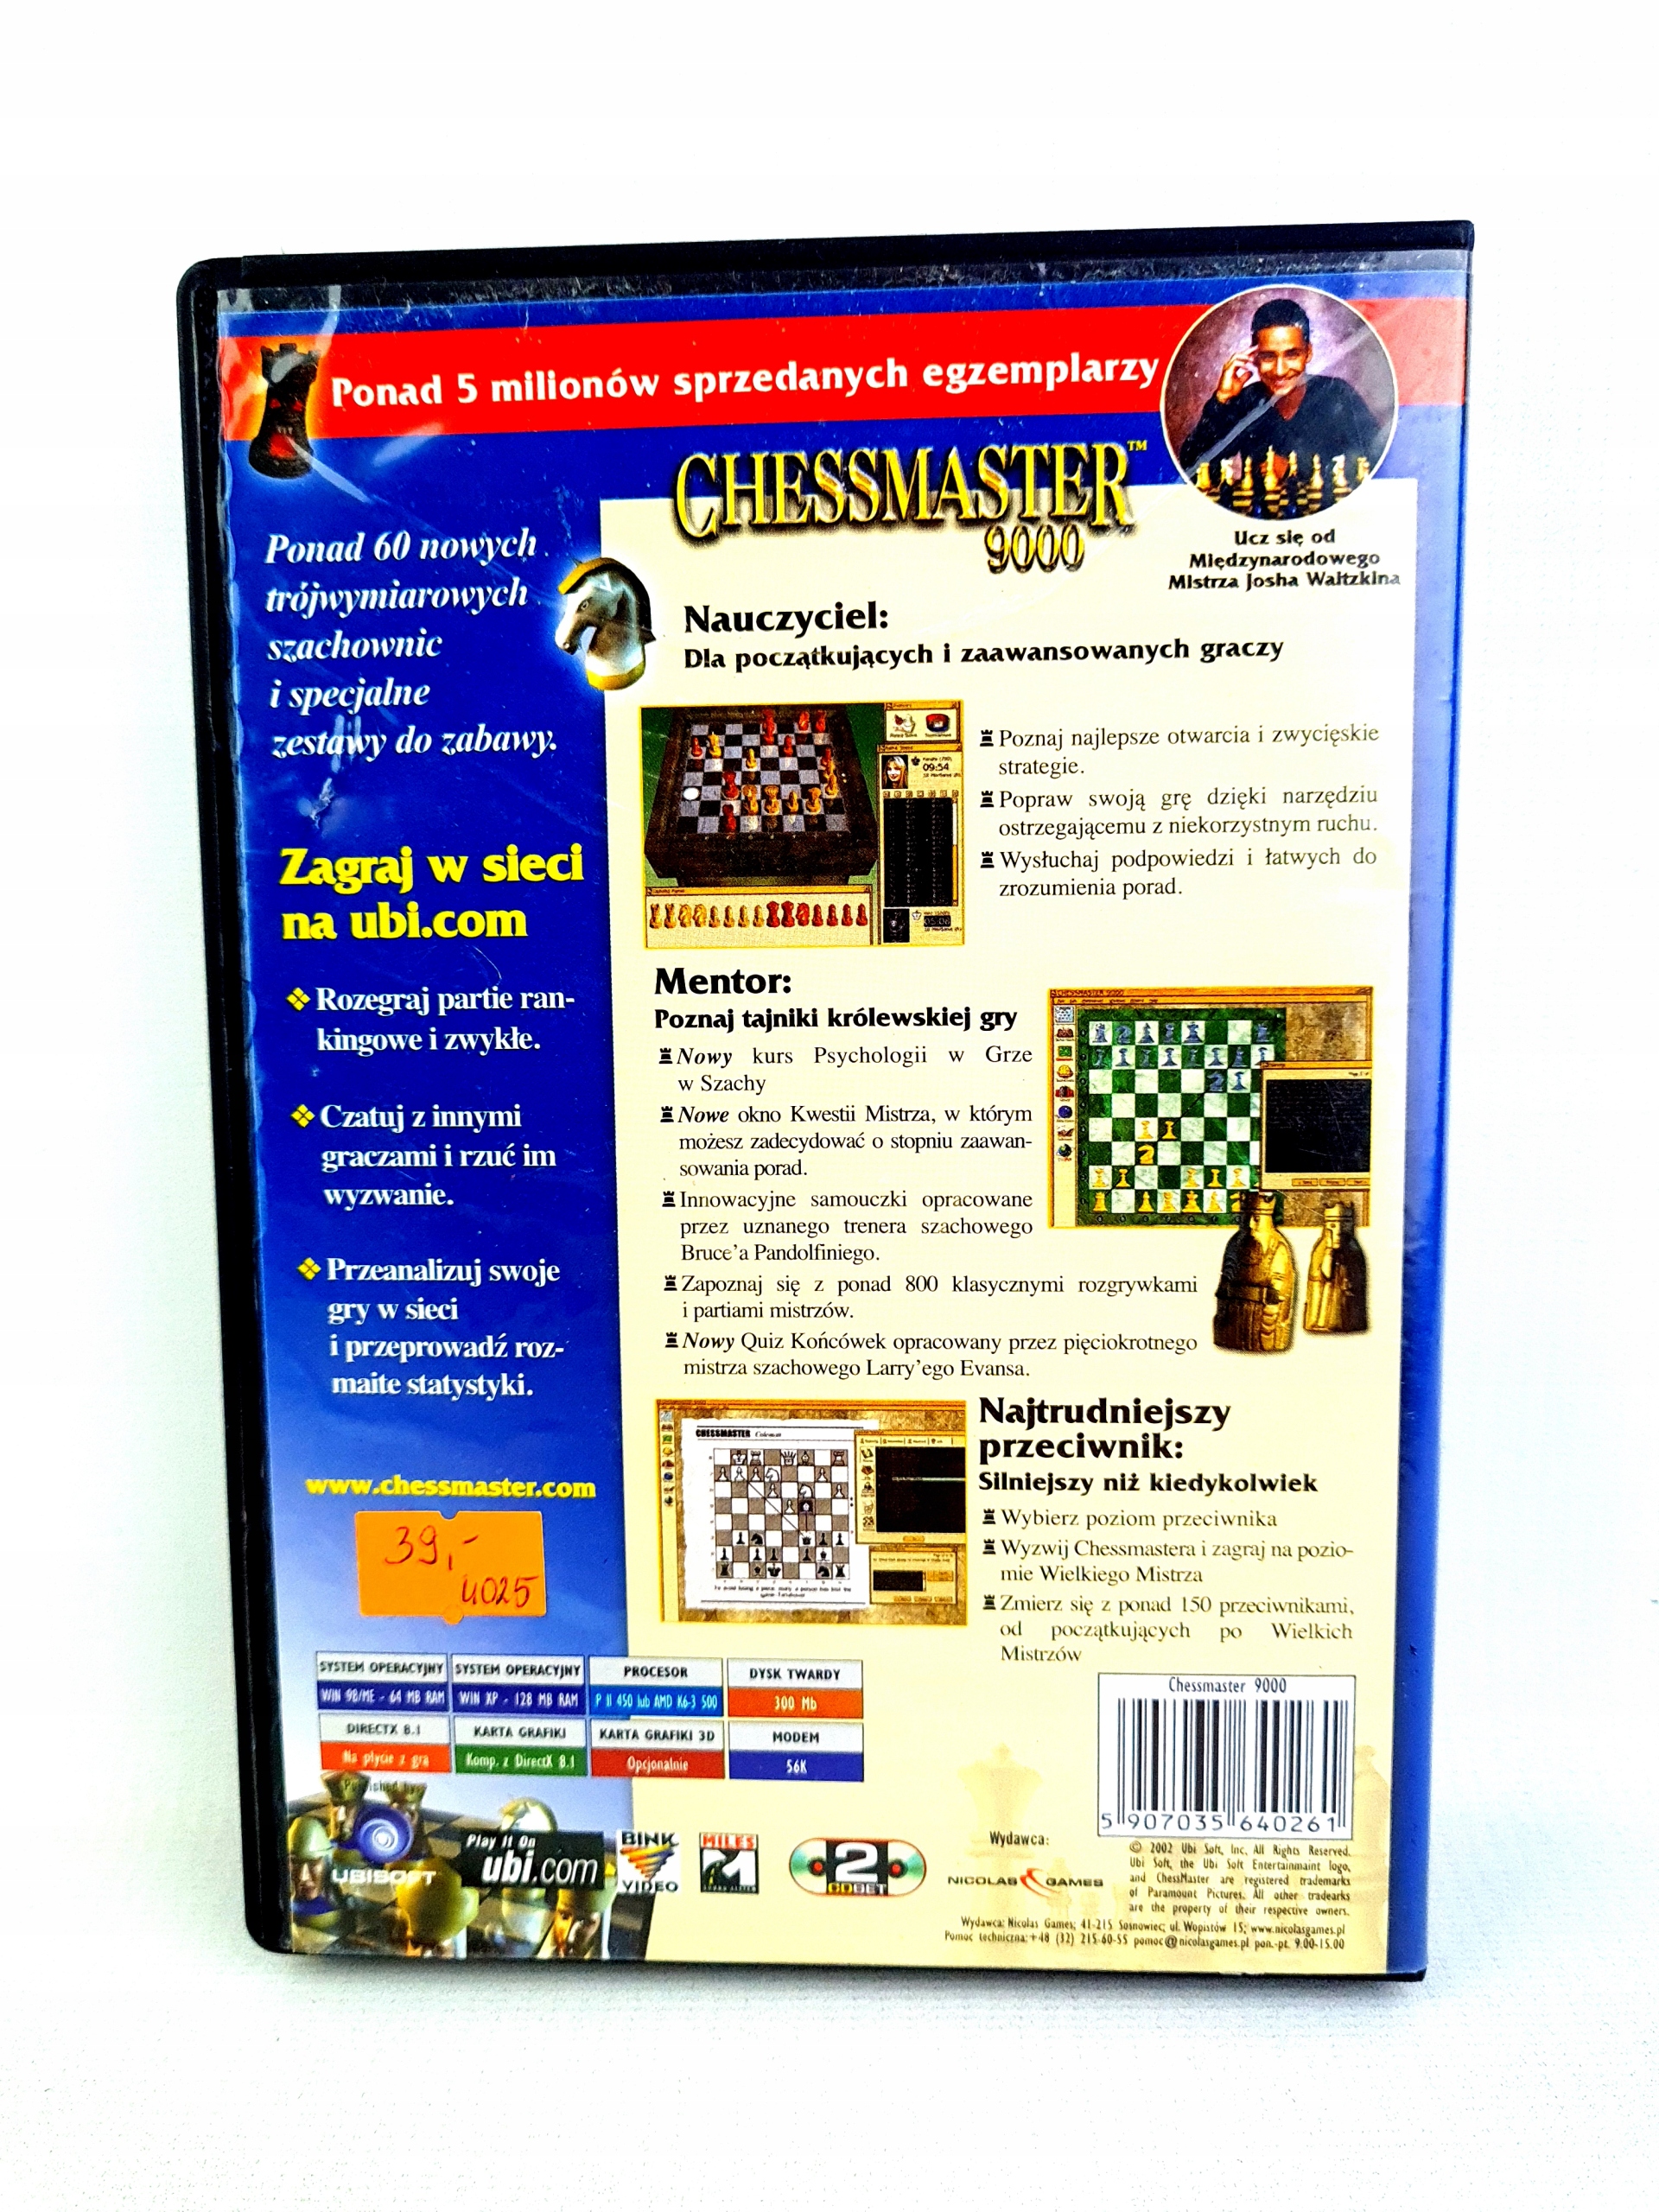 Chessmaster 9000 (2002)